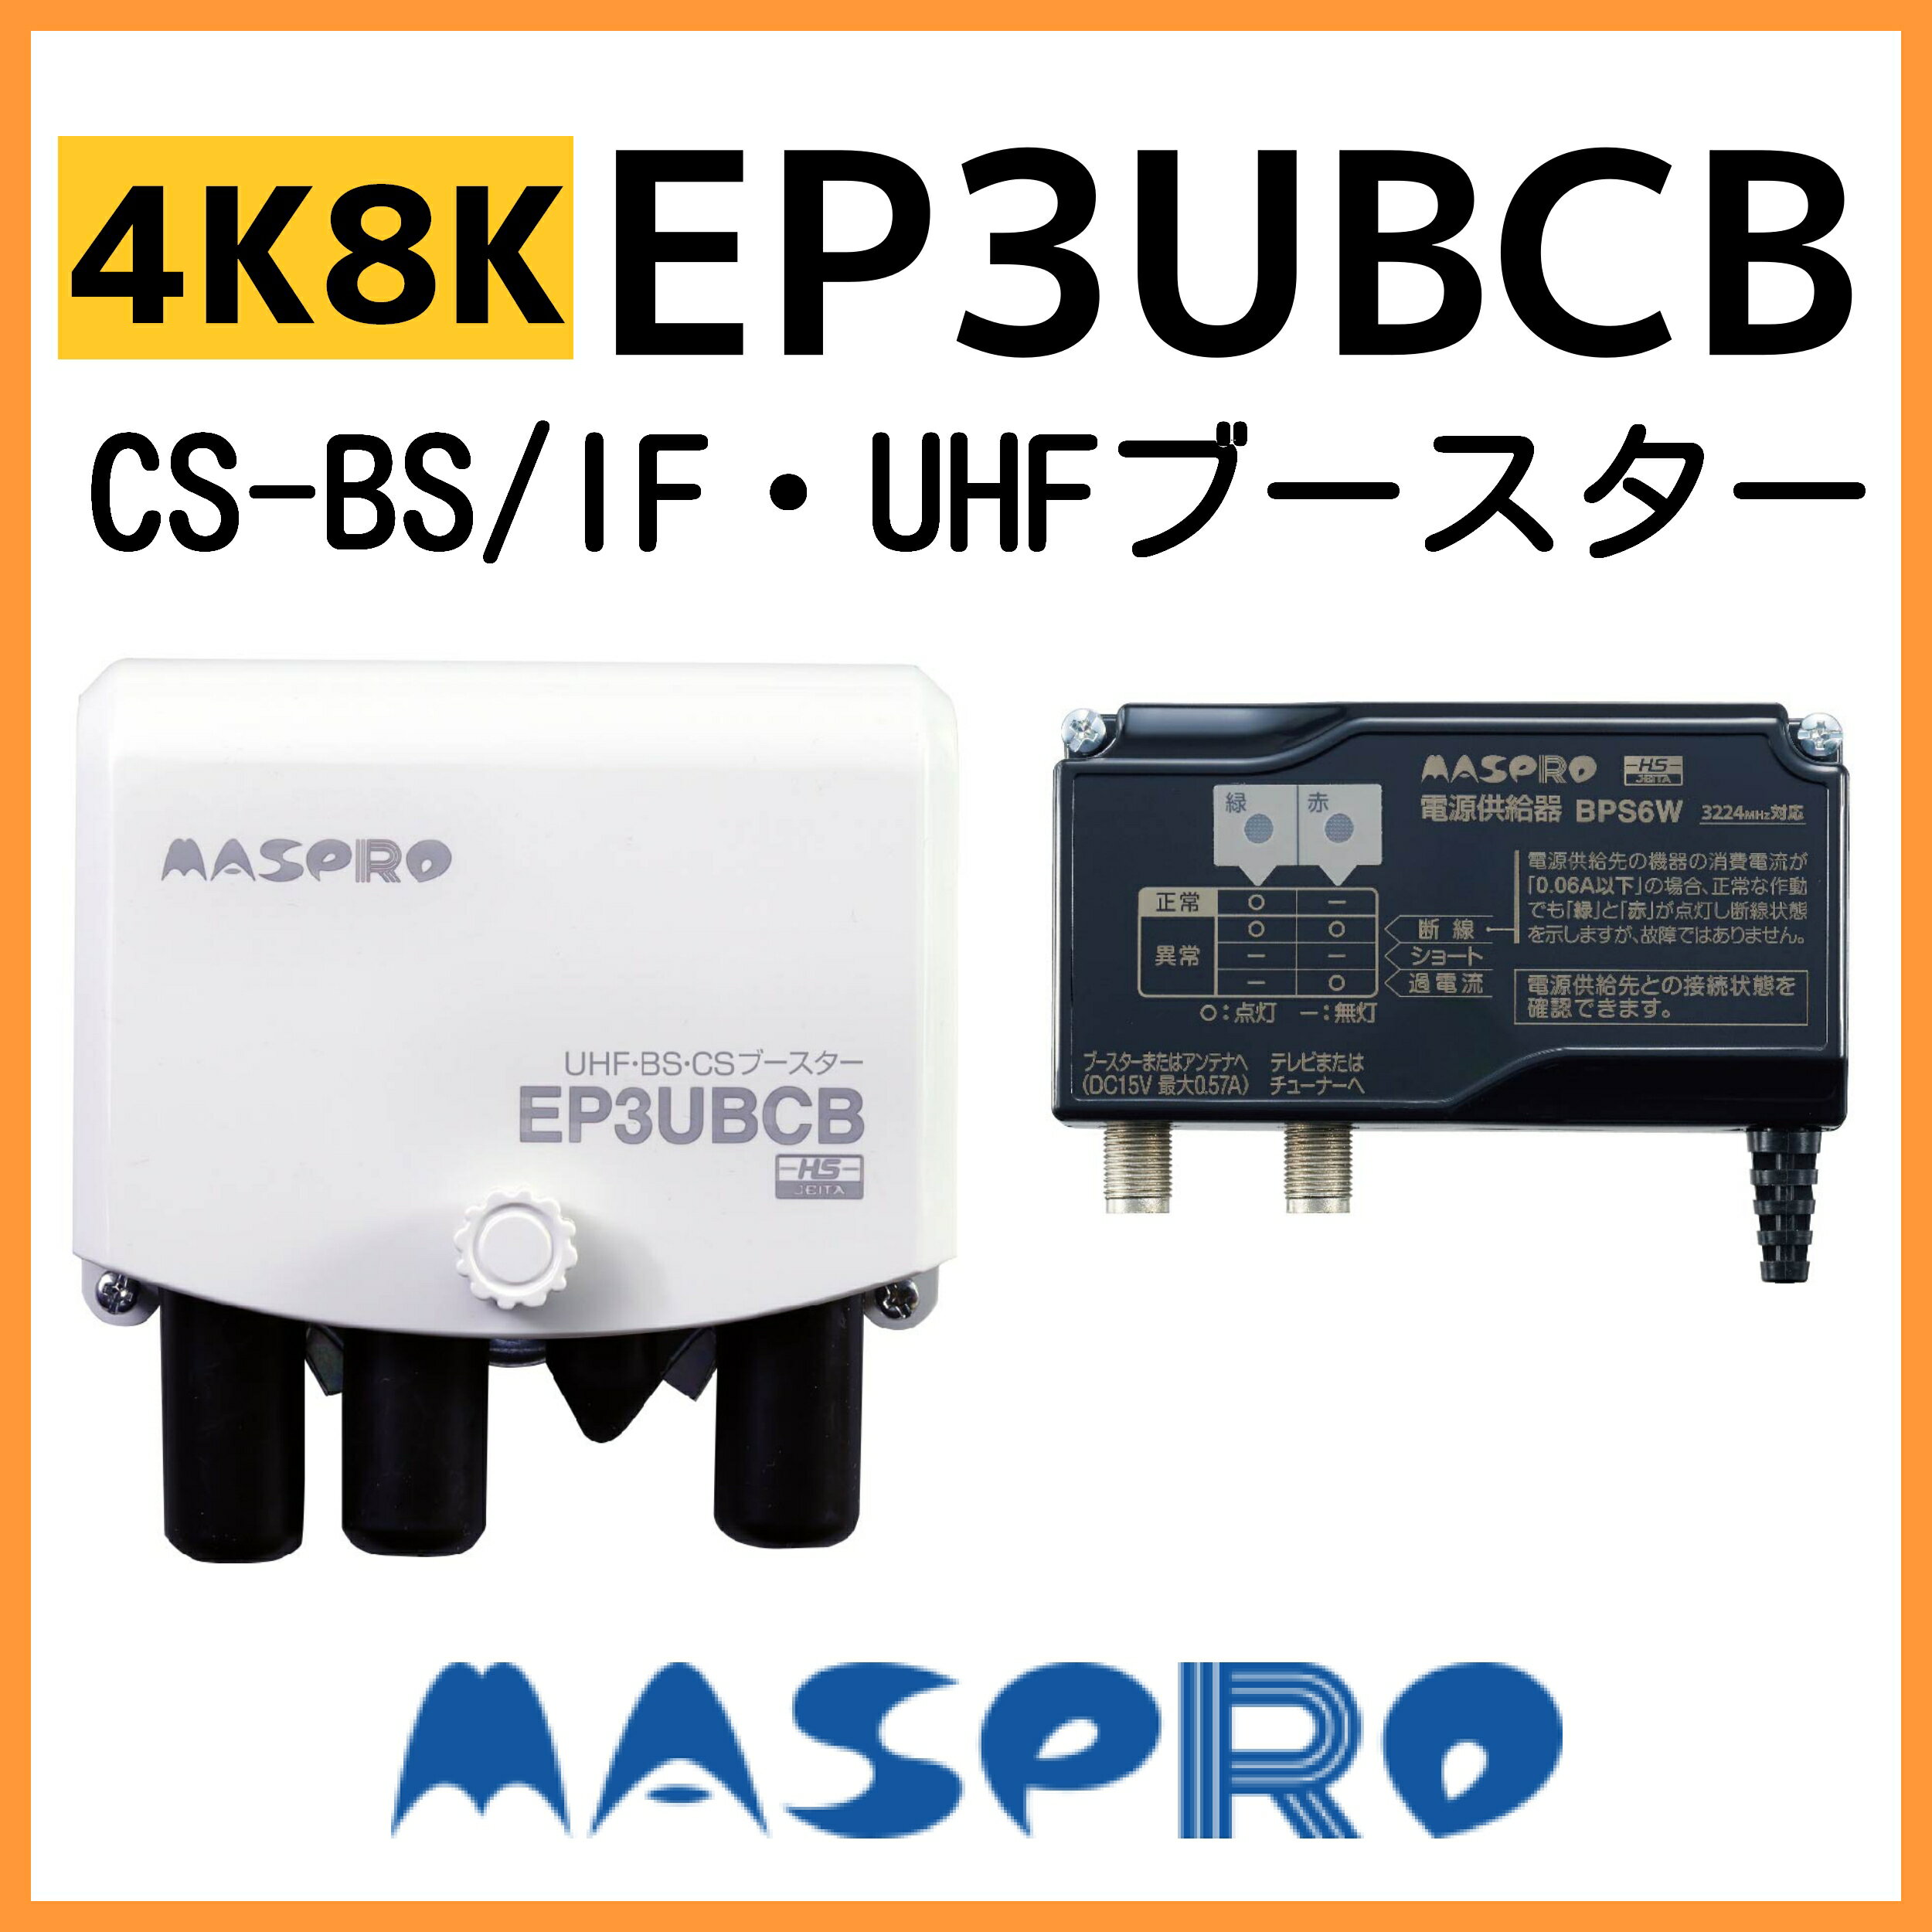 マスプロ UHF/BS(CS) ブースター EP3UBCB